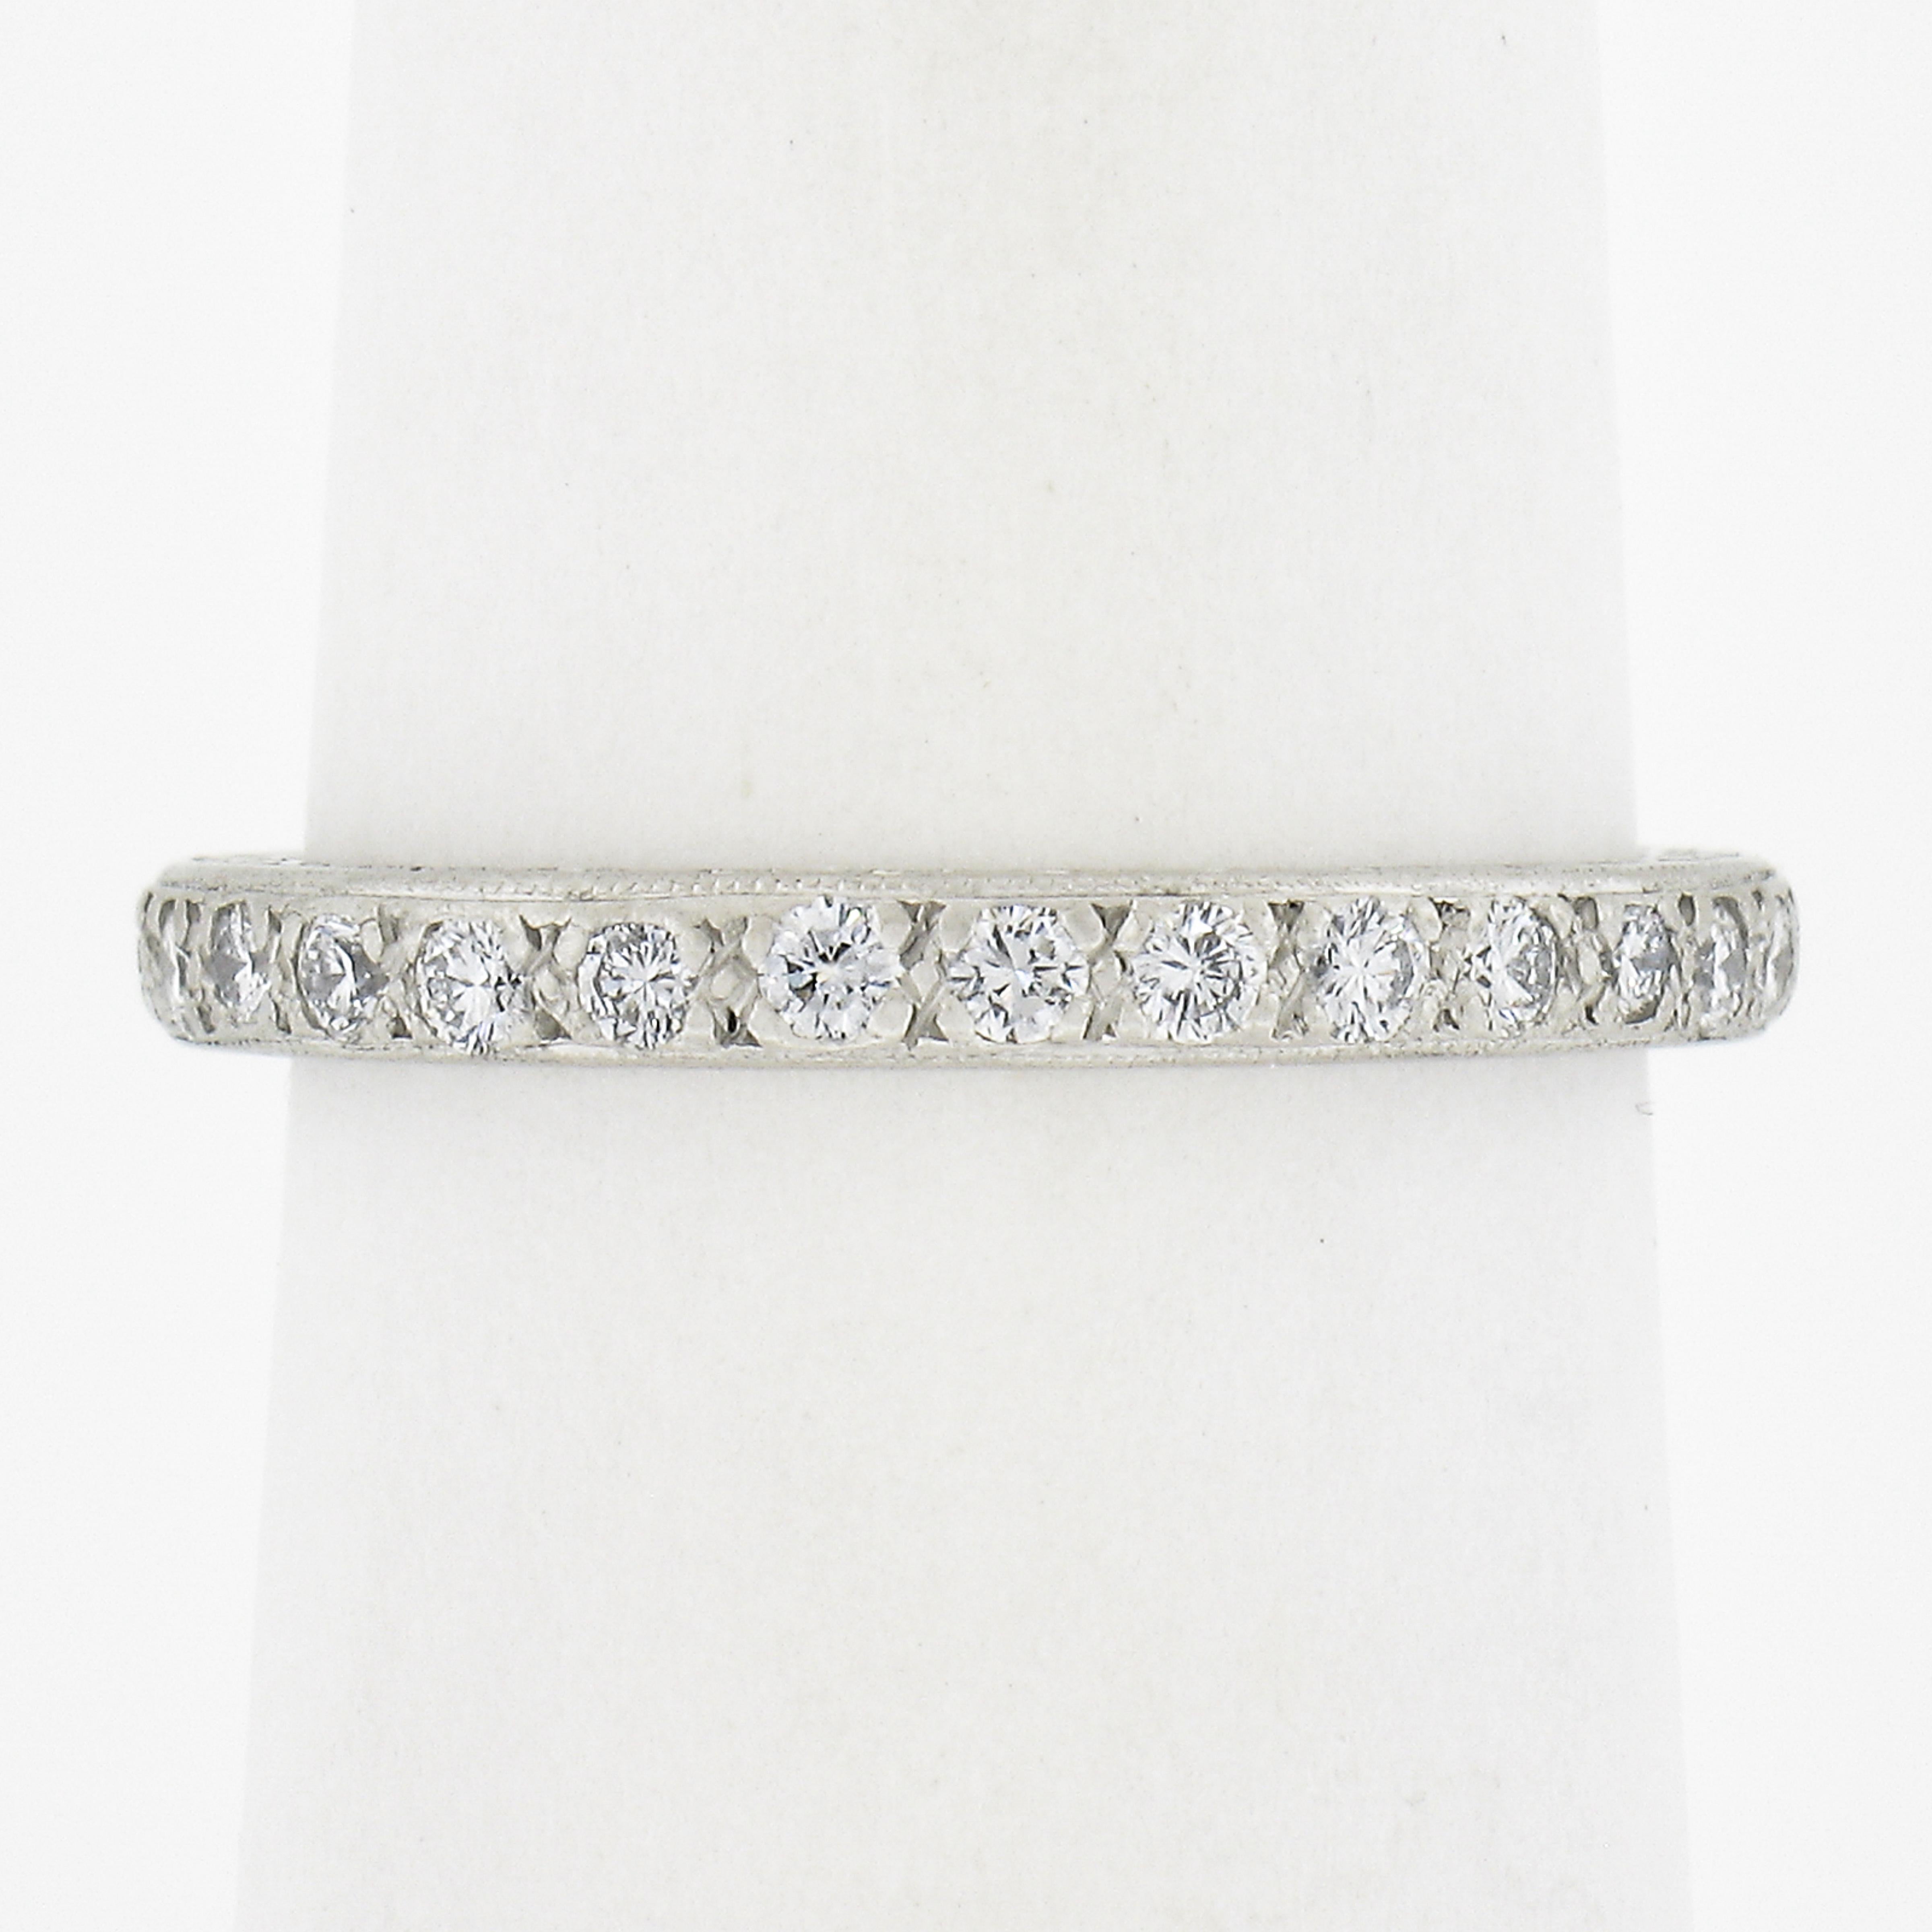 --Stein(e):--
(29) Natürliche echte Diamanten - Runder Brillantschliff - Milgrain Pave Set -  Farbe G/H - Reinheit VS1-SI1 - 0,60ctw (ca.)

MATERIAL: Massiv .900 Platin
Gewicht: 3.33 Gramm
Ringgröße: 6.0 (Passt auf einen Finger. Wir können diesen